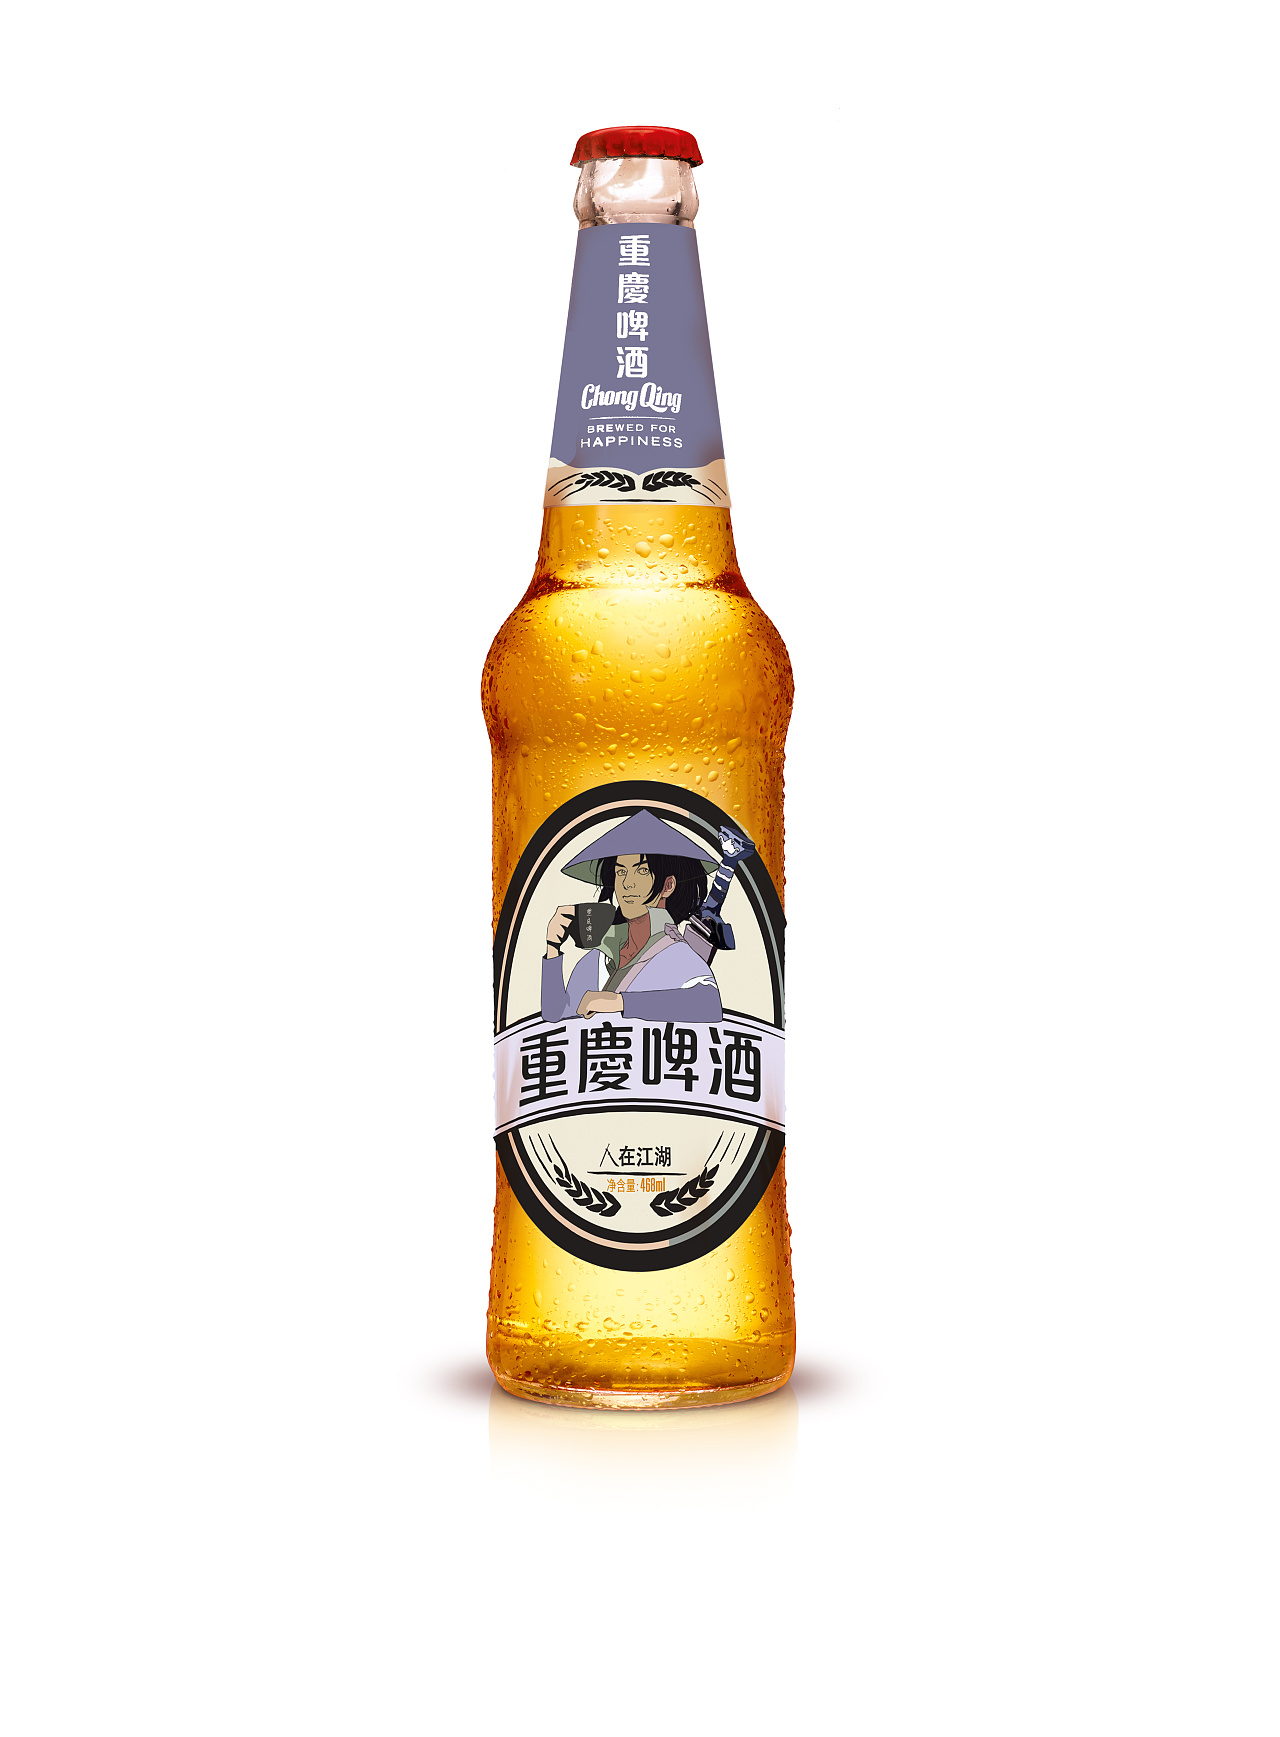 1297.62亿 青岛啤酒刷新中国啤酒品牌新高度 ——2017《中国500最具价值品牌》发布 青岛啤酒连续14年蝉联中国啤酒第一品牌_第一财经